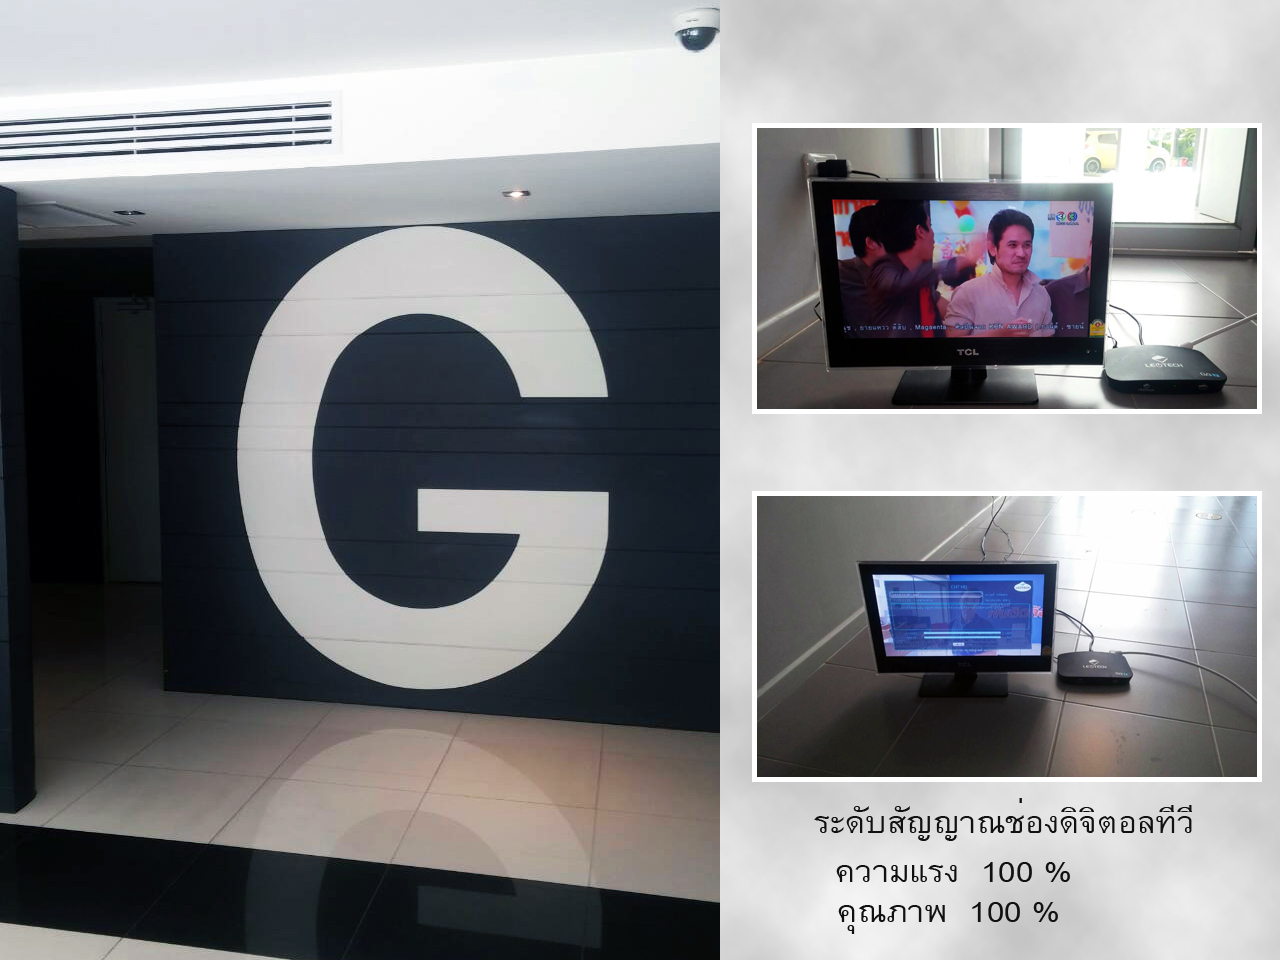 ทดสัญญาณดิจิตอลทีวี ที่อาคาร G